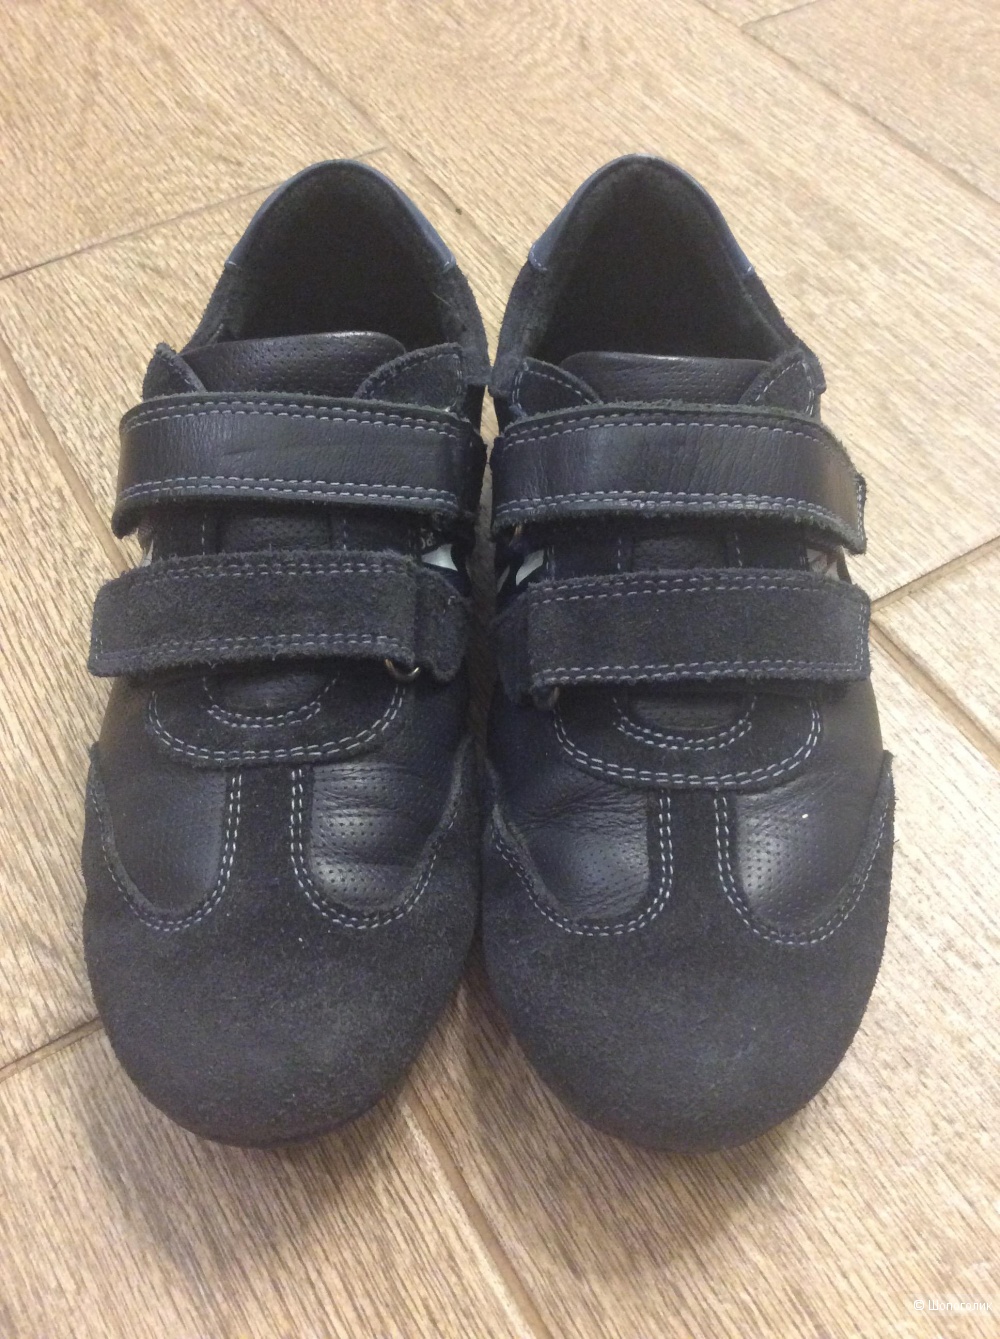 Спортивные туфли Elegami р.34 (21,5 см)